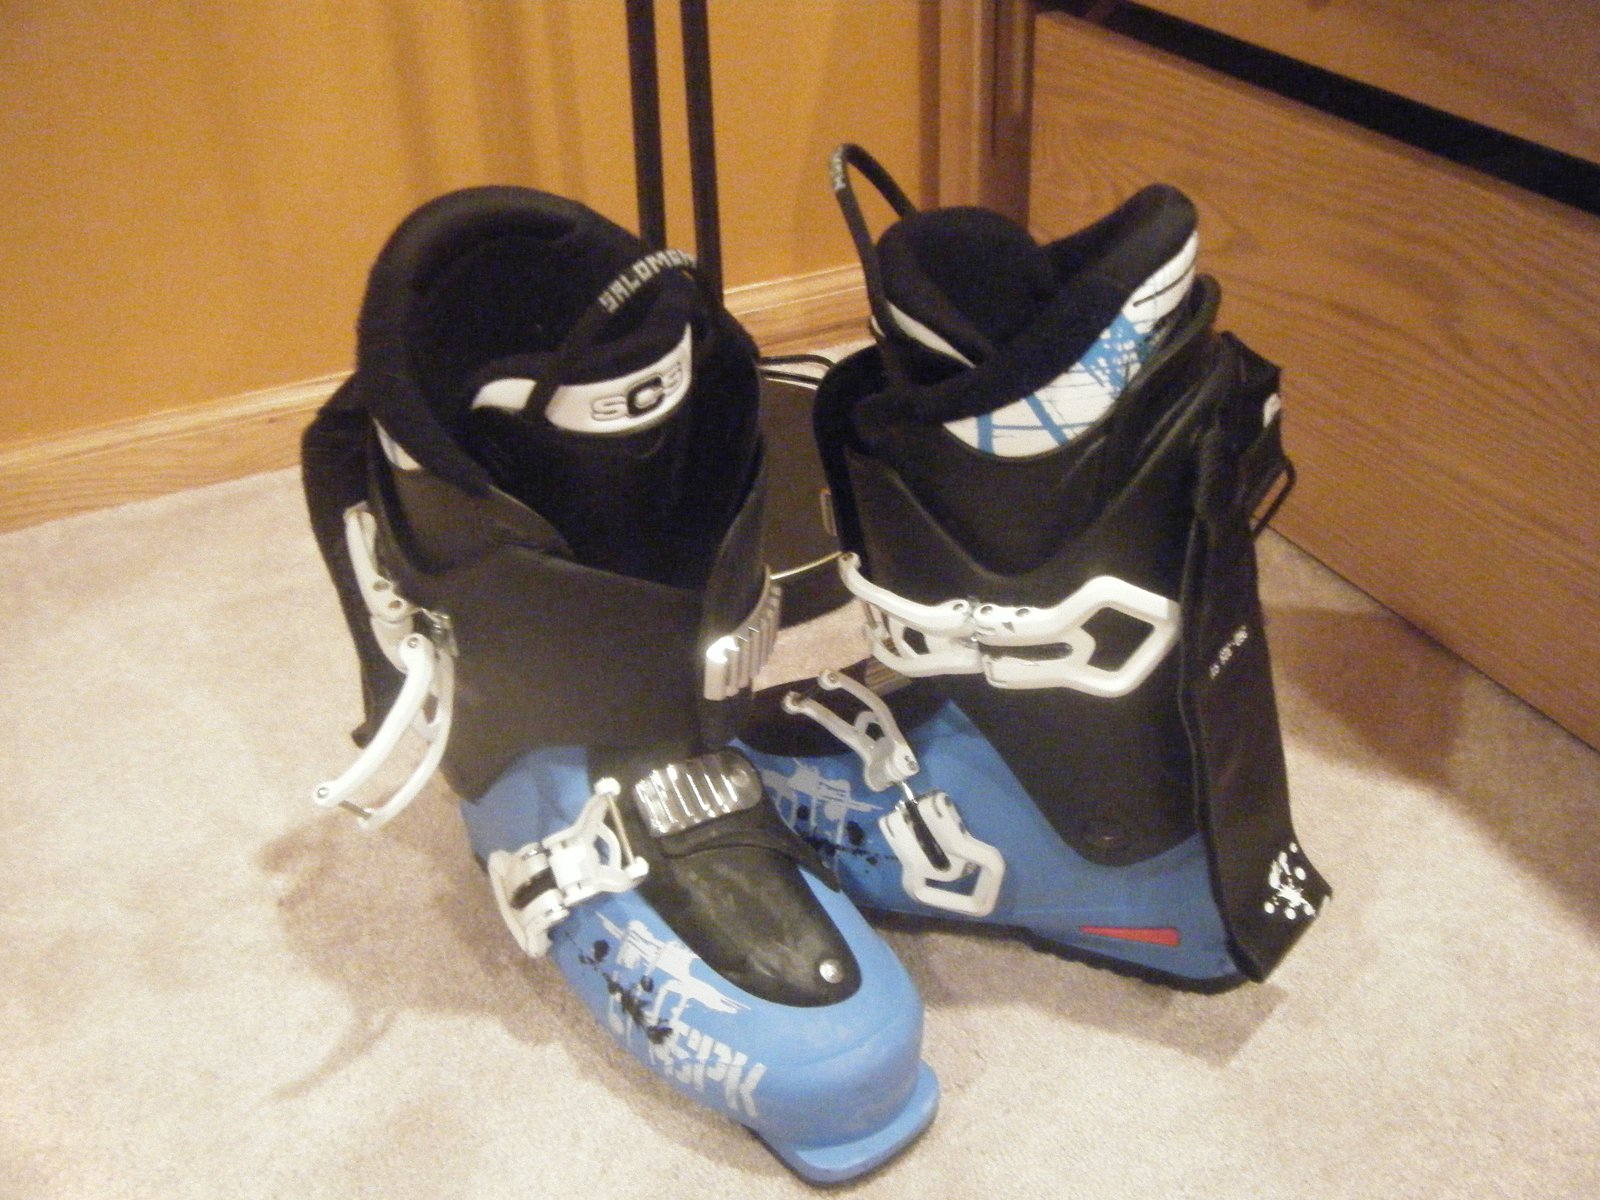 Salomon kreation ski boots